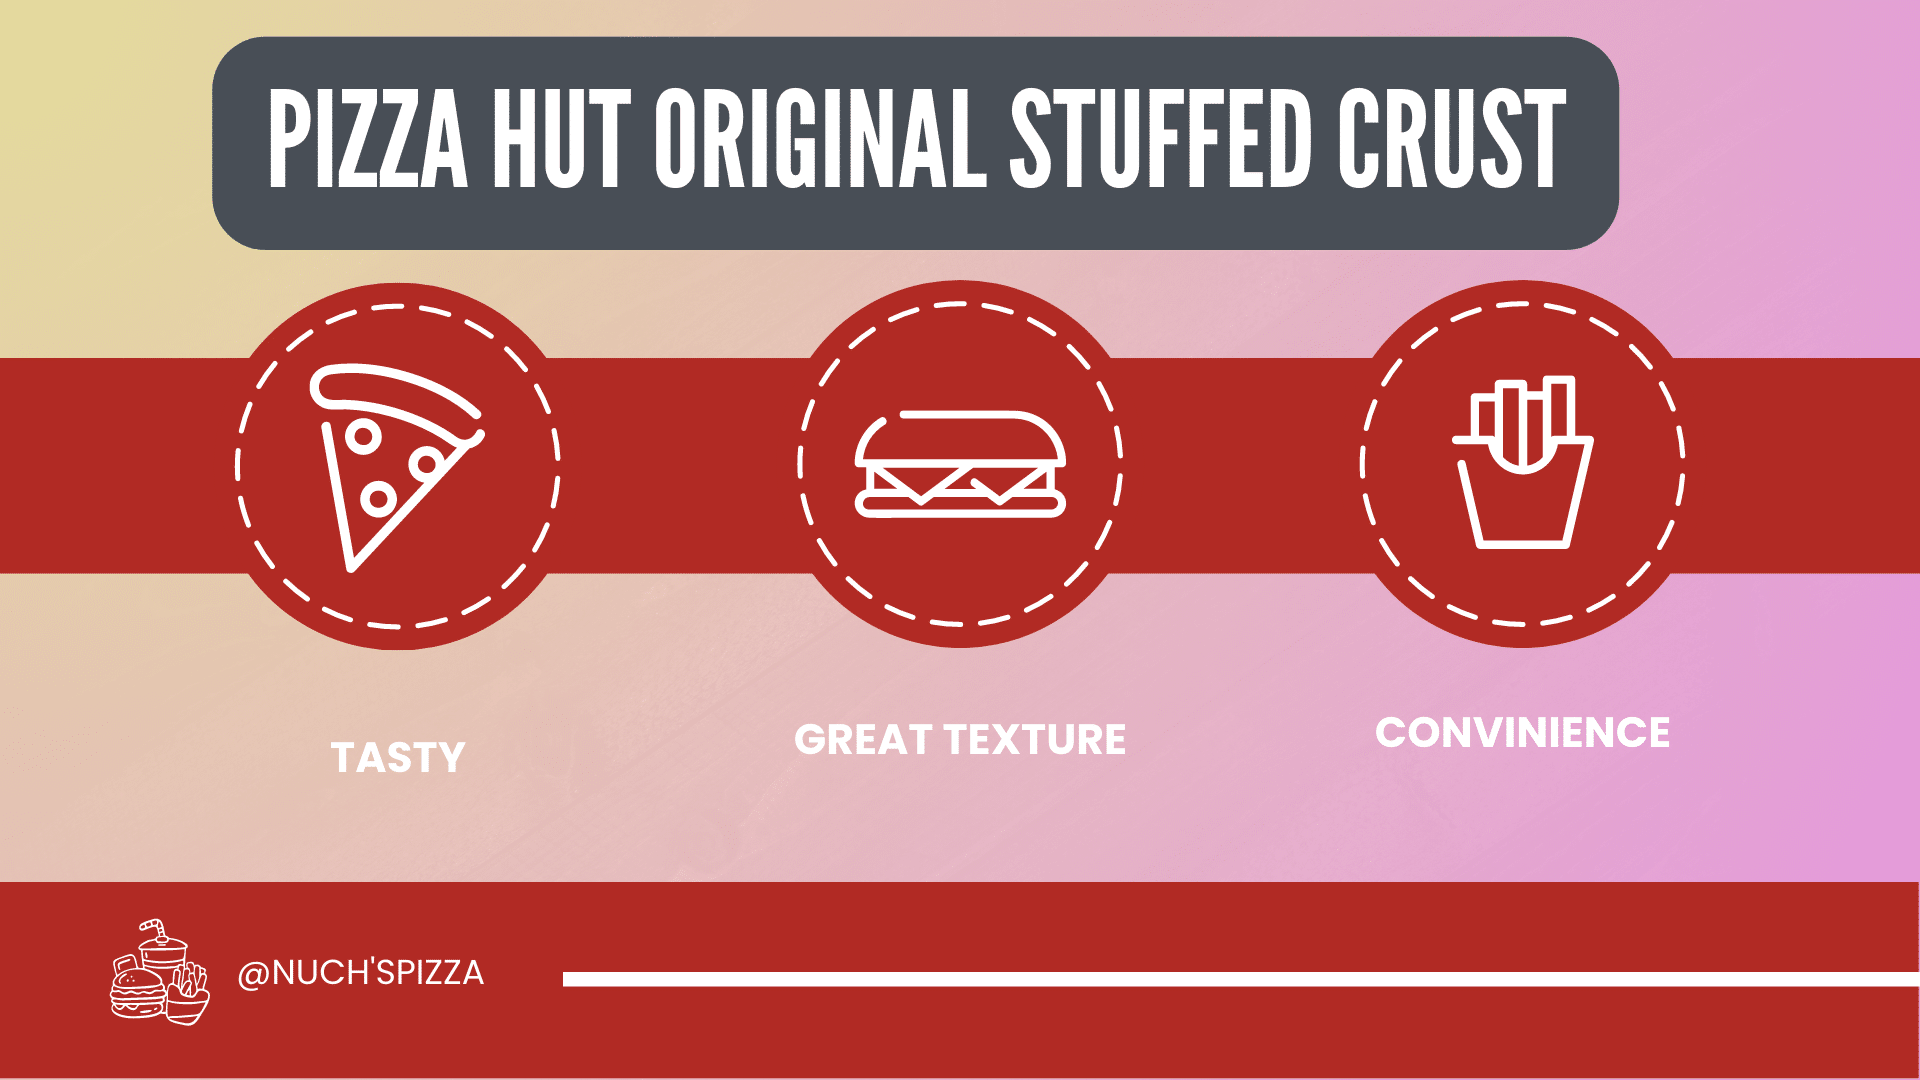 Pizza Hut stuffed crust